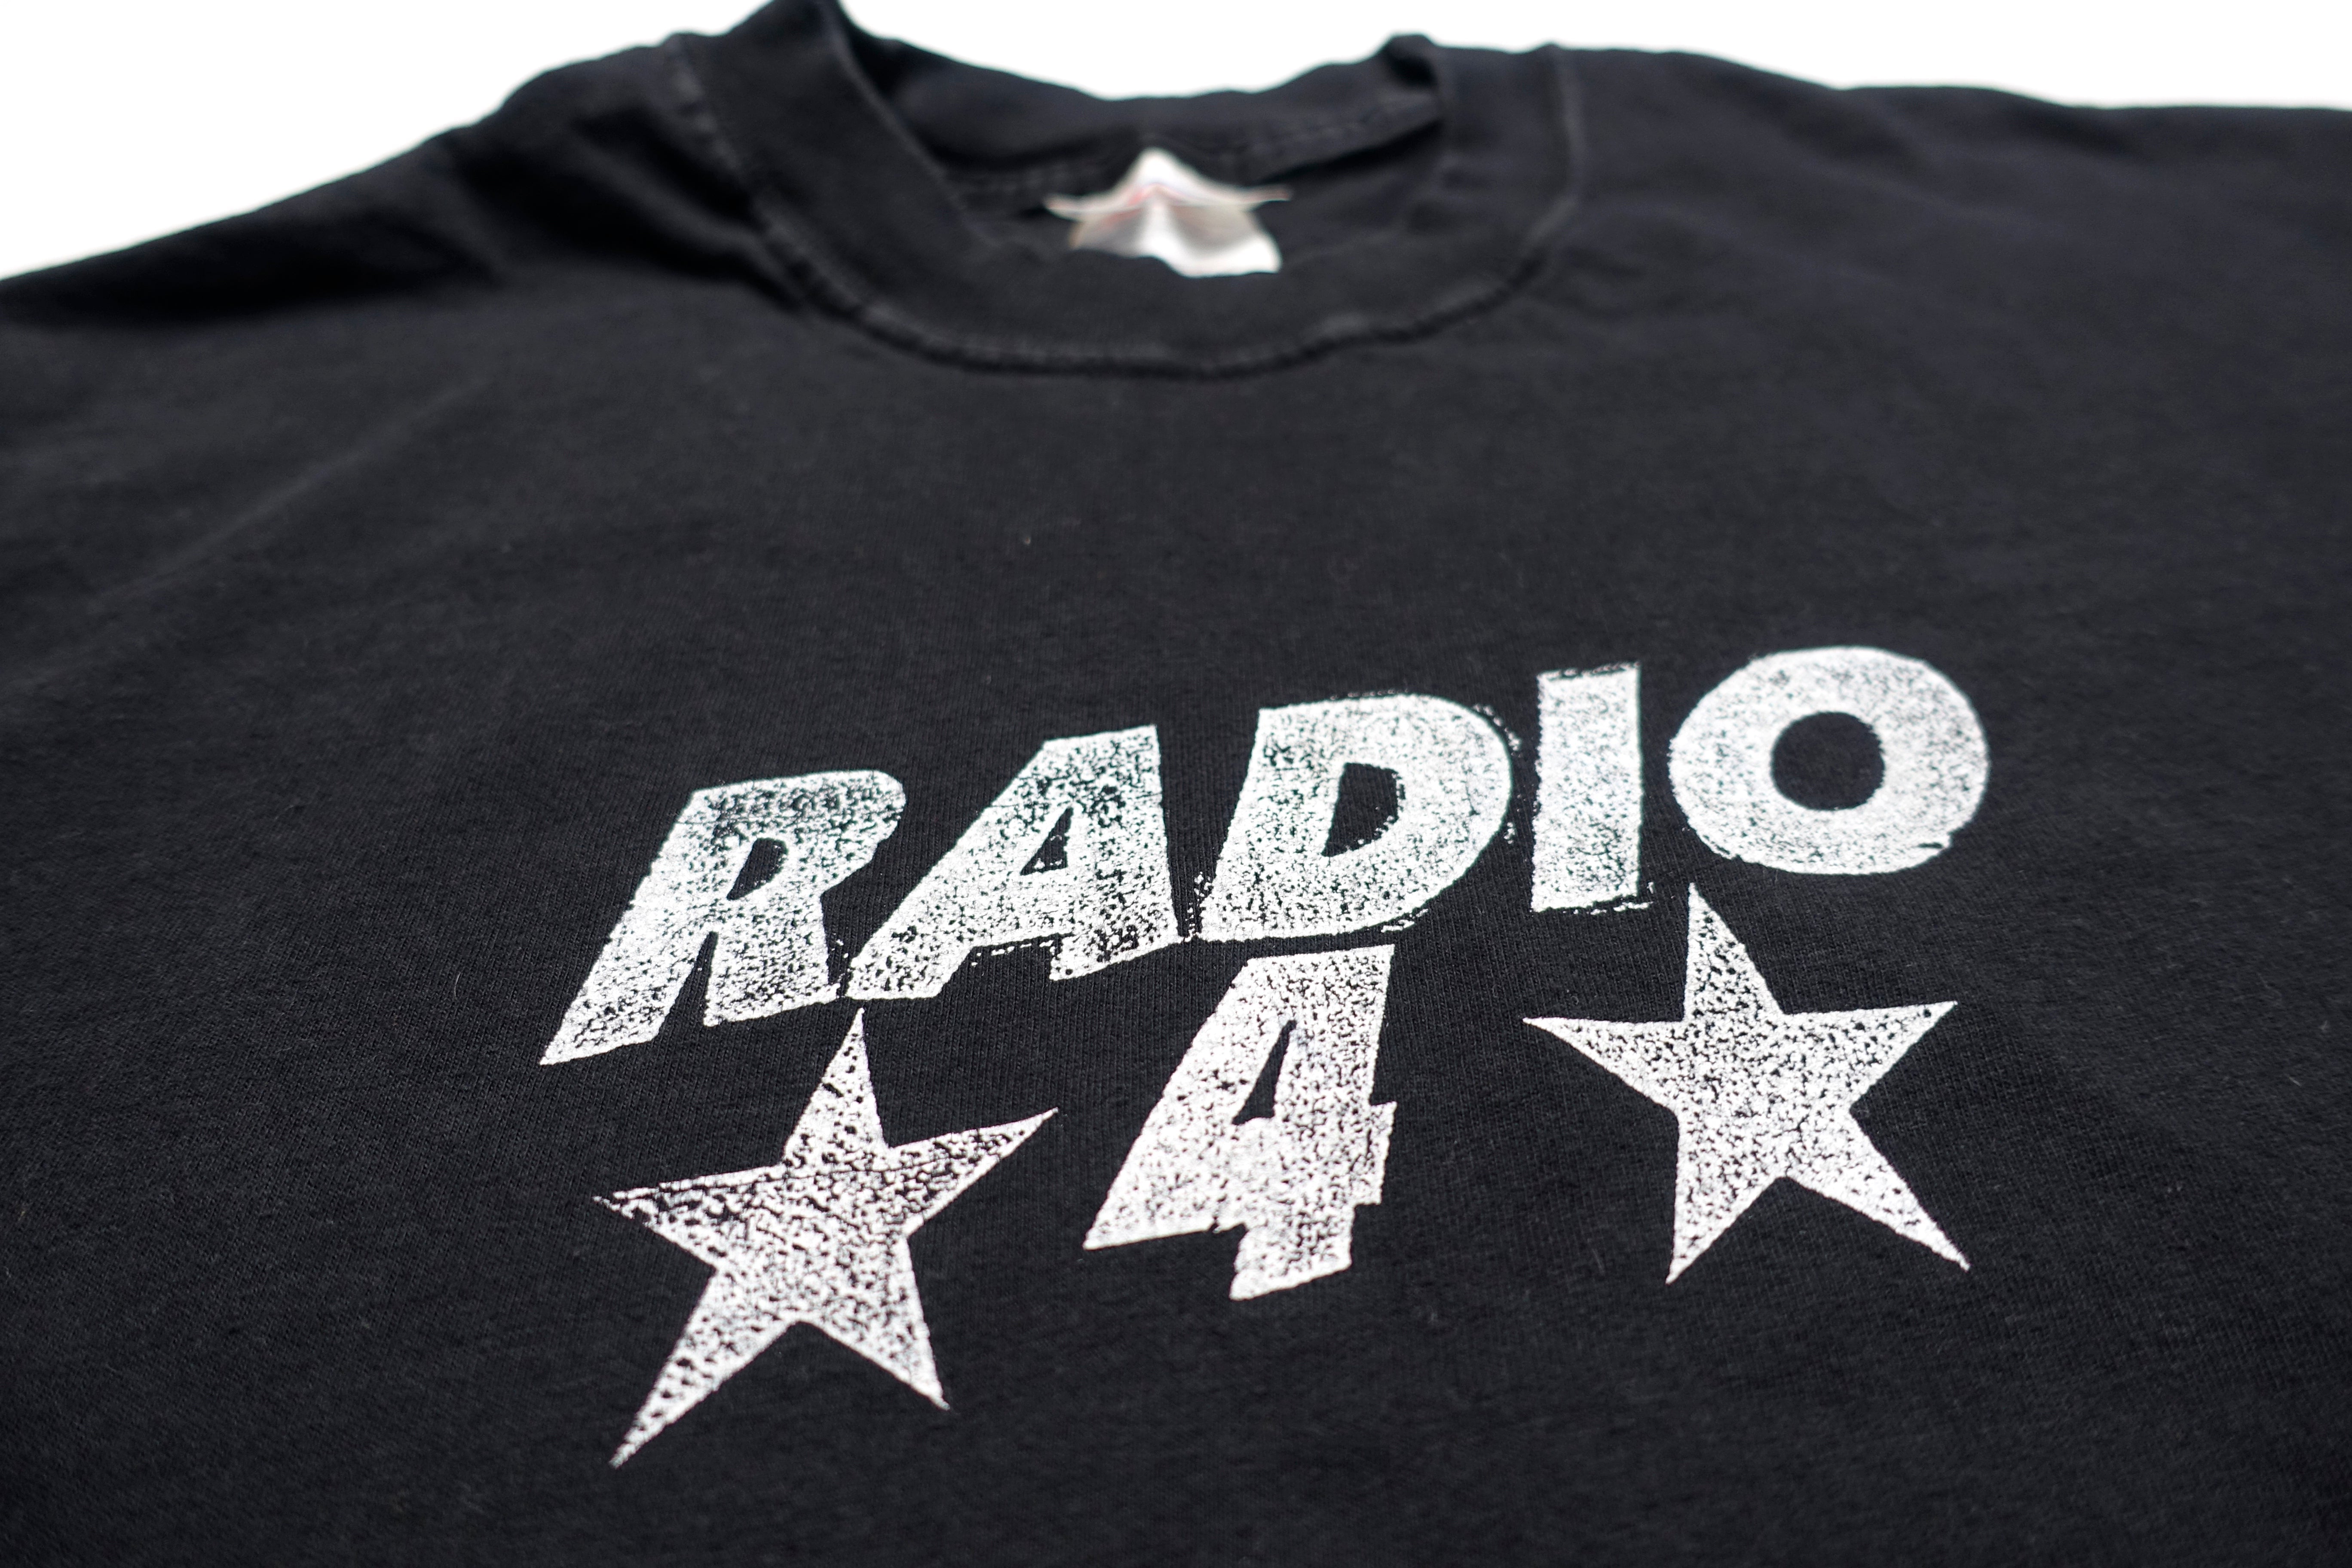 Radio 4 - Gotham 2002 Tour Shirt Size Large